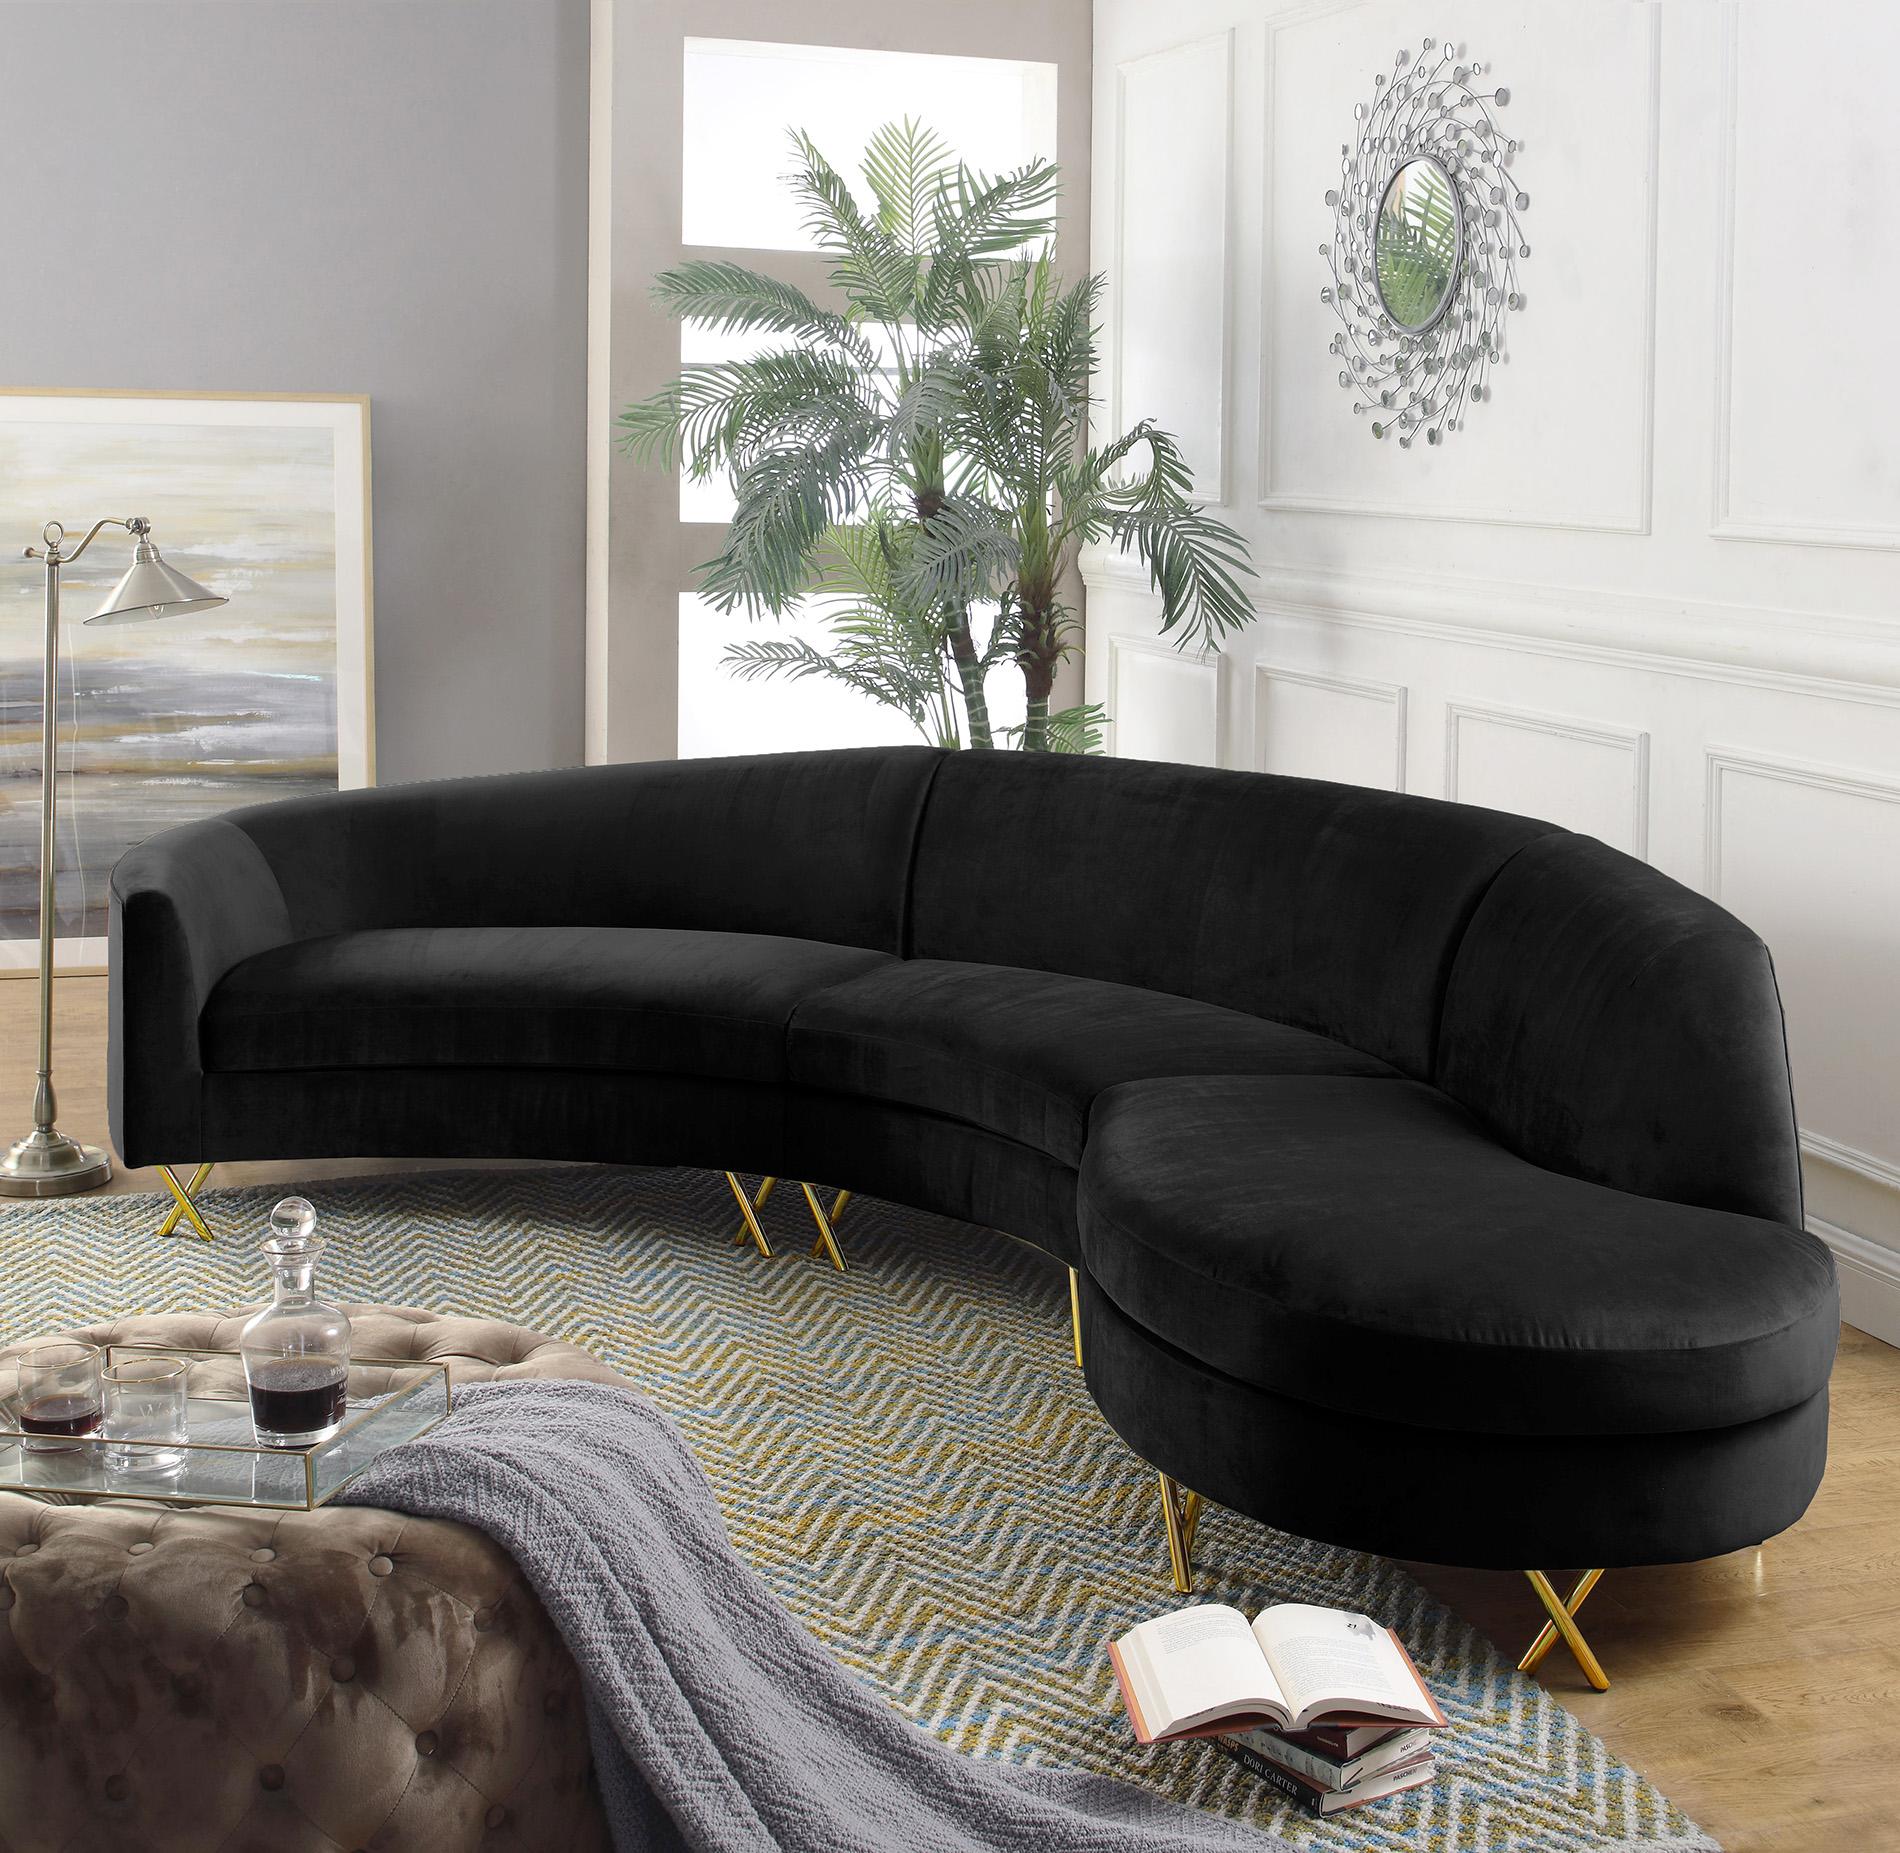 Contemporary, Modern Sectional Sofa SERPENTINE 671Black 671Black-Sectional in Black Velvet